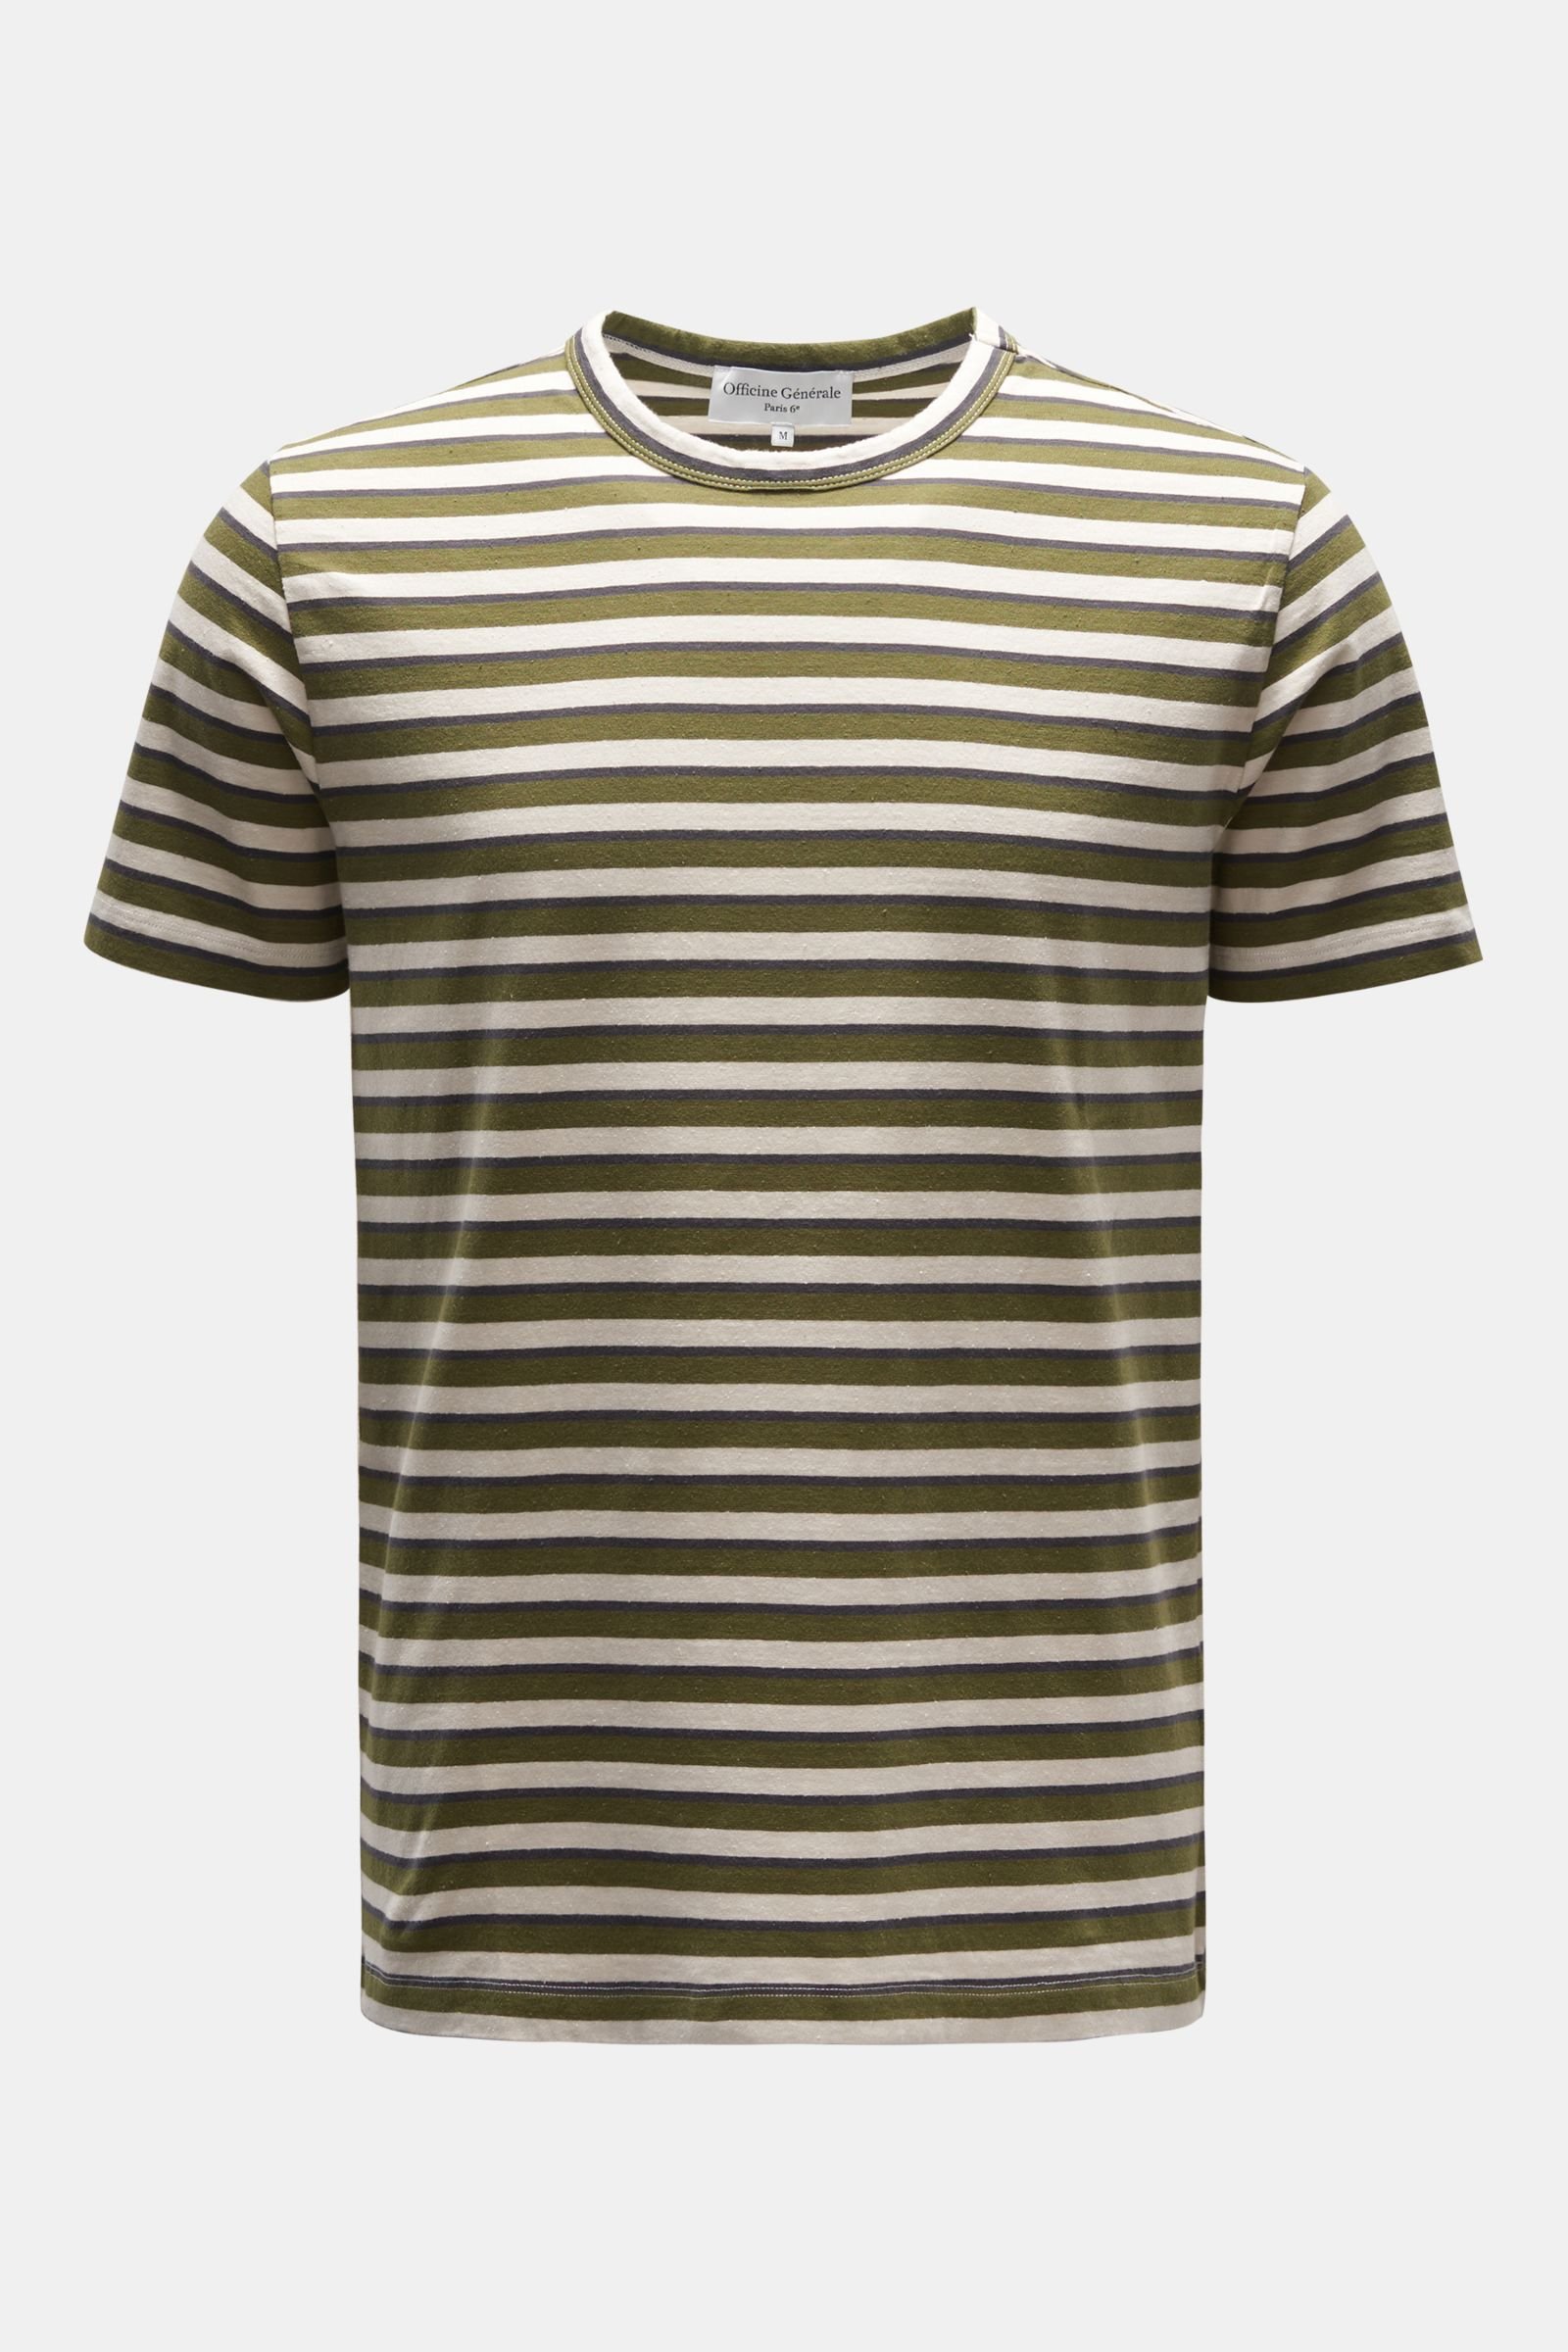 Crew neck T-shirt olive/beige/dark grey striped